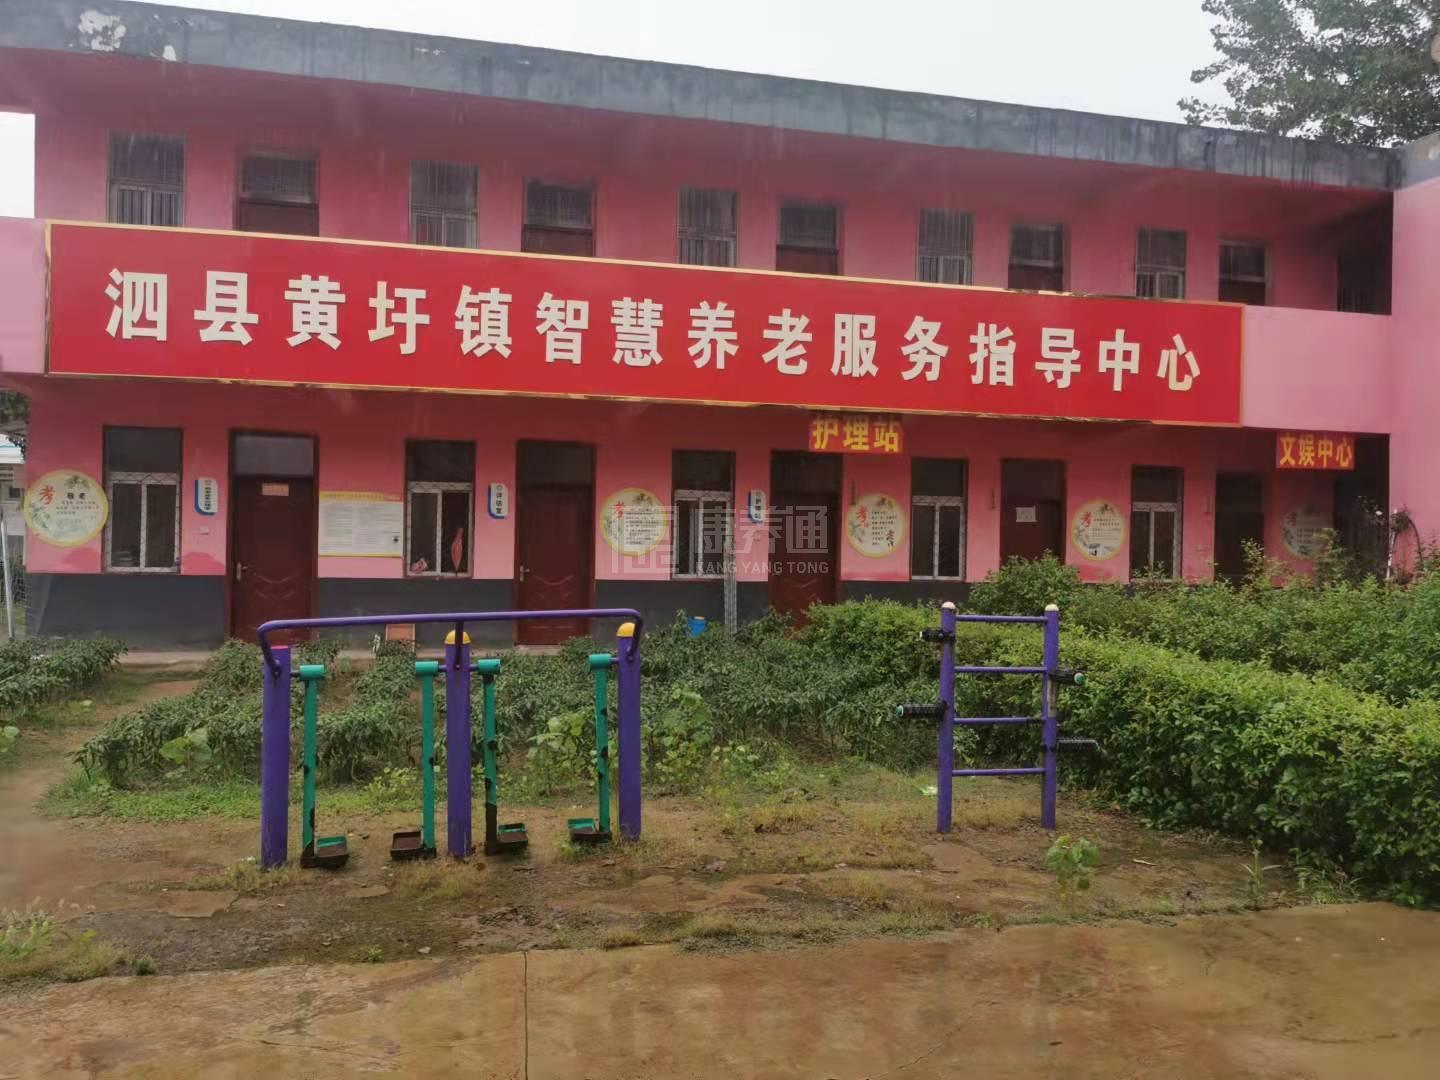 泗县黄圩镇养老服务中心服务项目图4让长者主动而自立地生活